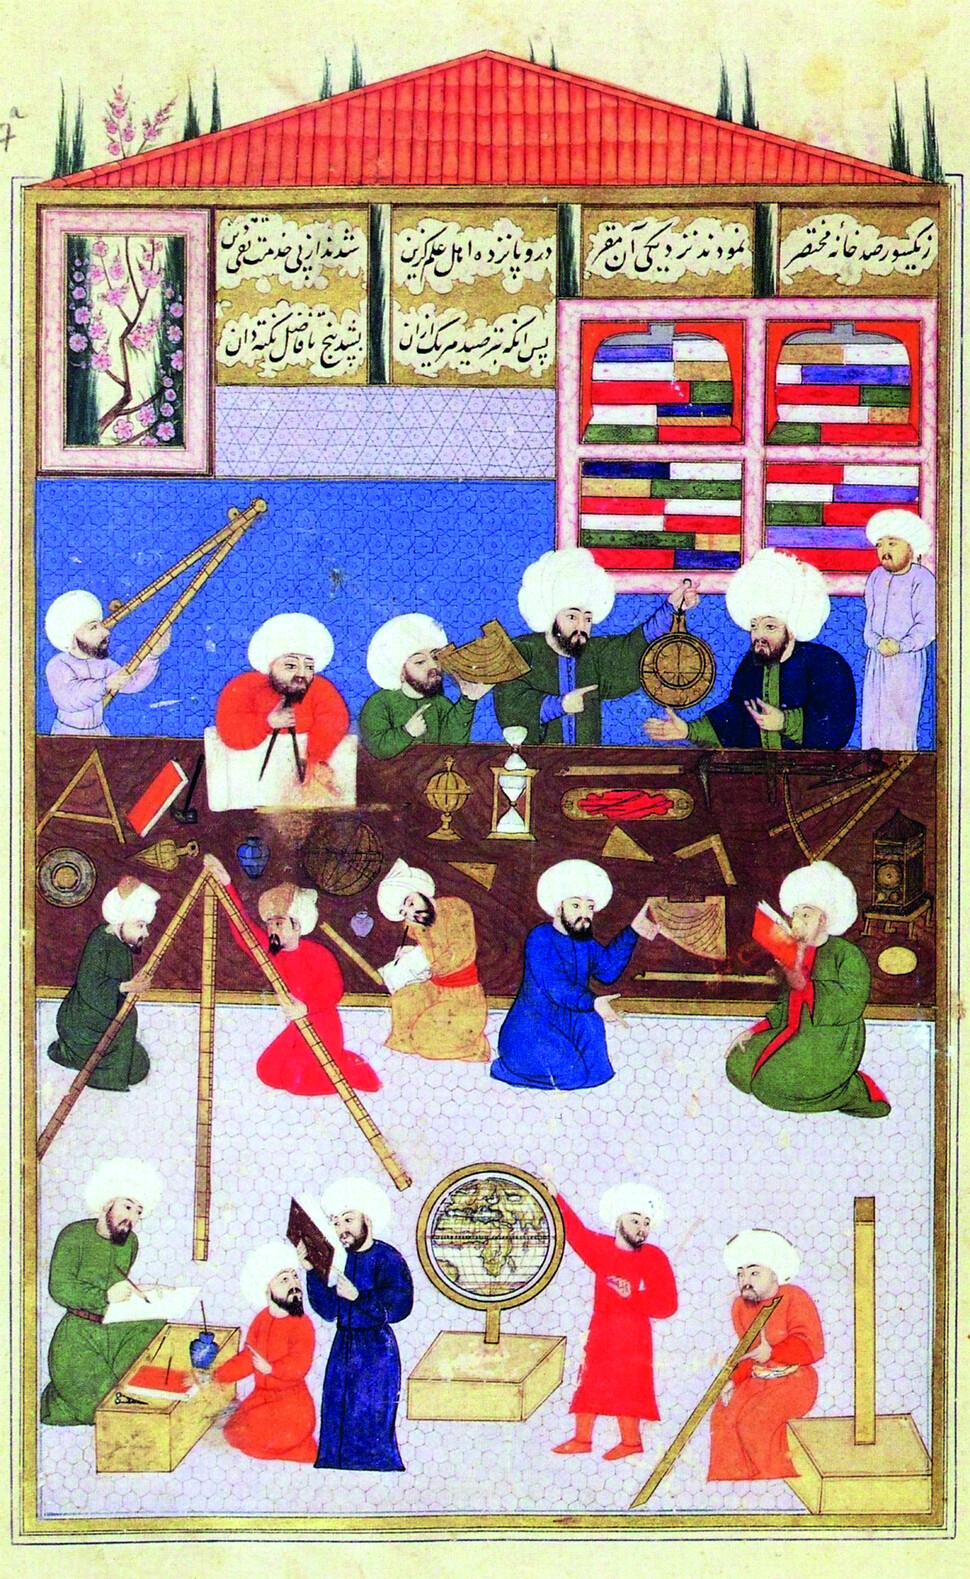 이스탄불 갈라타 탑 천문대에서 관측 중인 천문학자들. 지구본, 사분의, 모래시계, 아스트롤라베 등 다양한 장비를 사용하고 있다. 16세기 그림. 마농지 제공